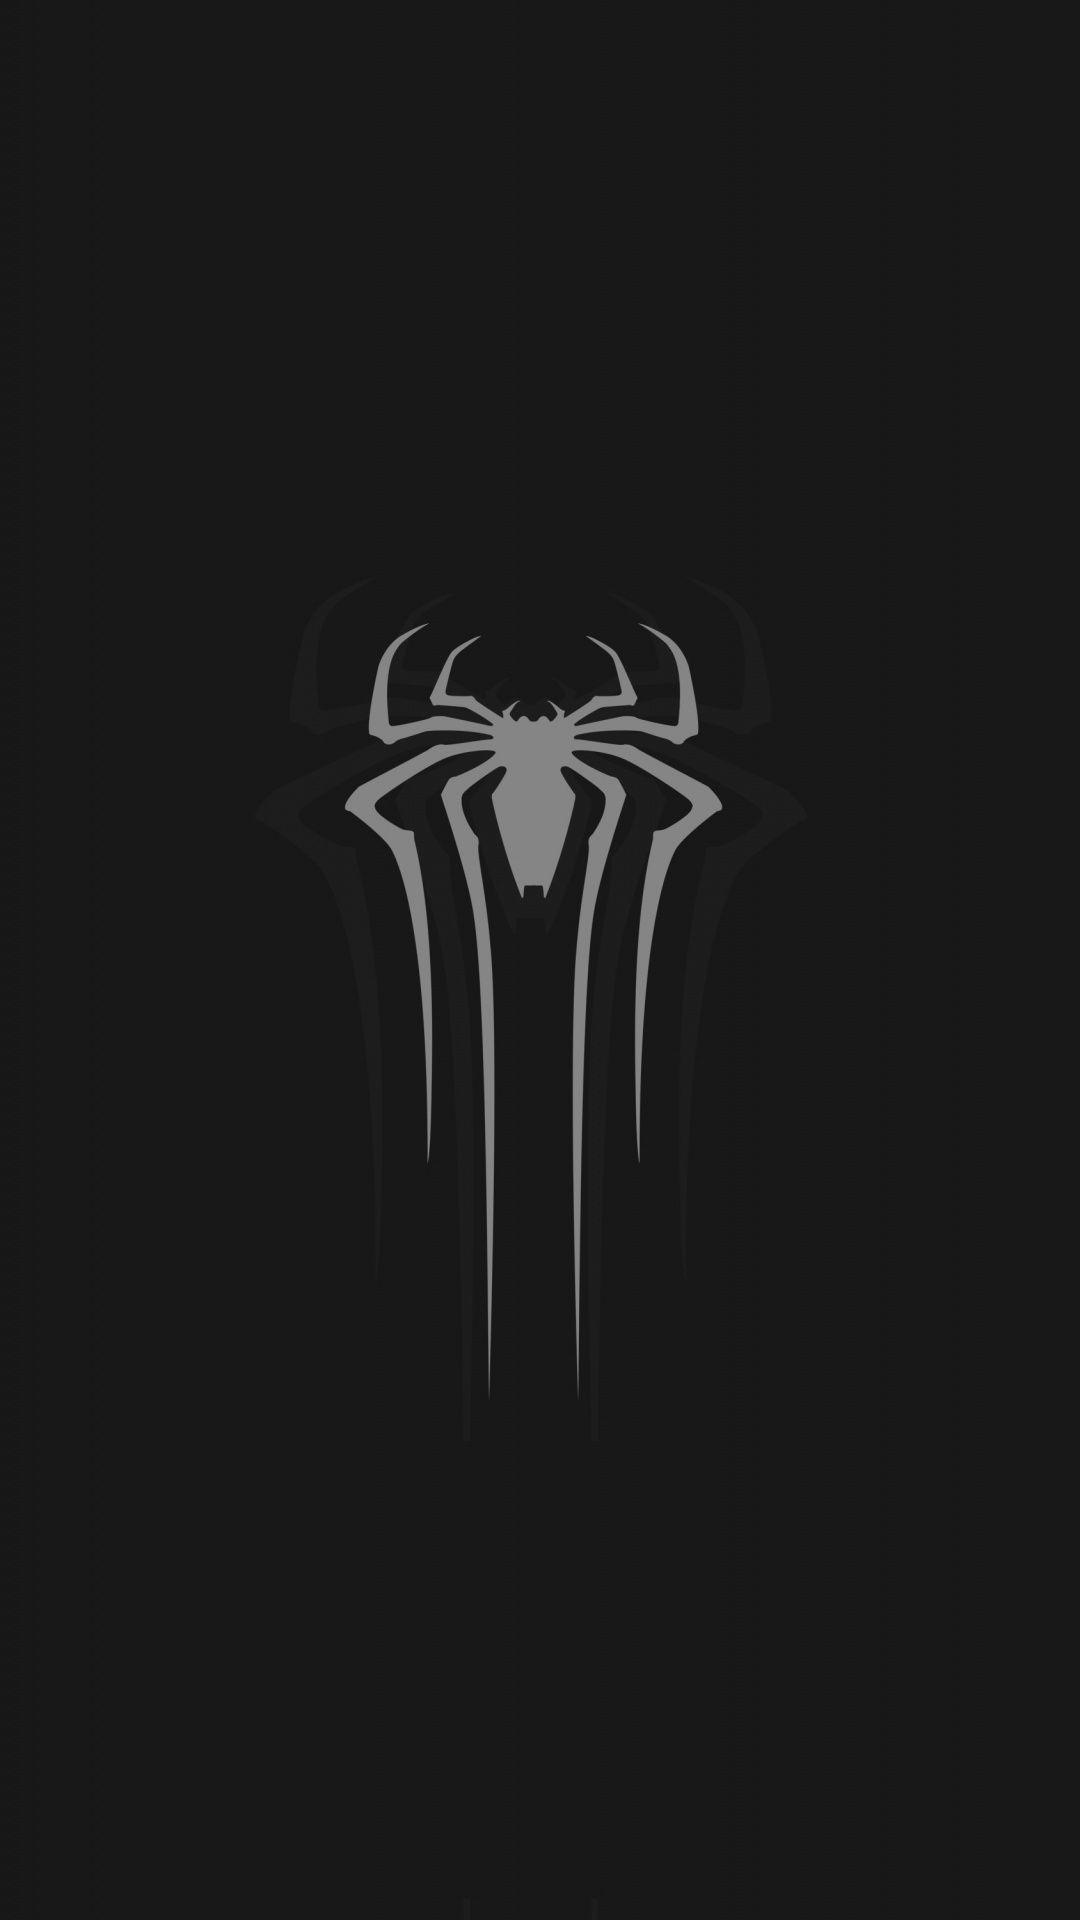 1080x1920 Tải xuống 1080x1920 Logo hình nền, Màu xám, Người nhện, Tối thiểu, Tối